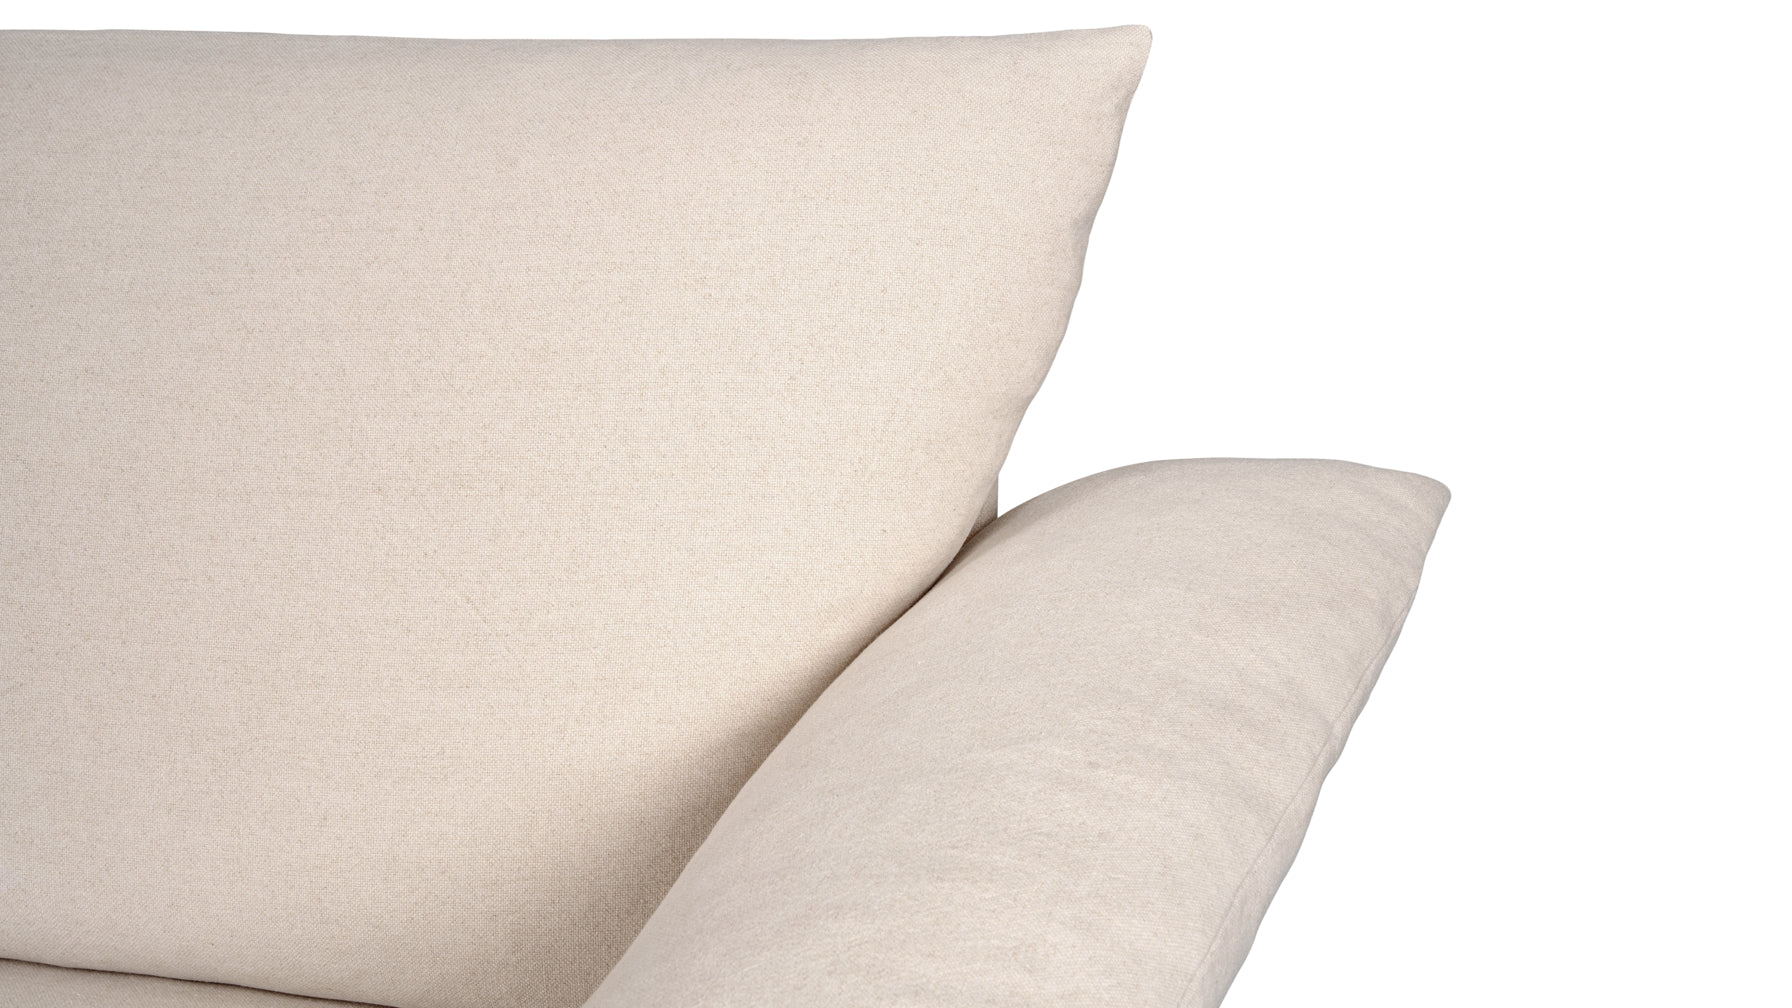 Pillow Talk Sofa, Fawn - Image 7